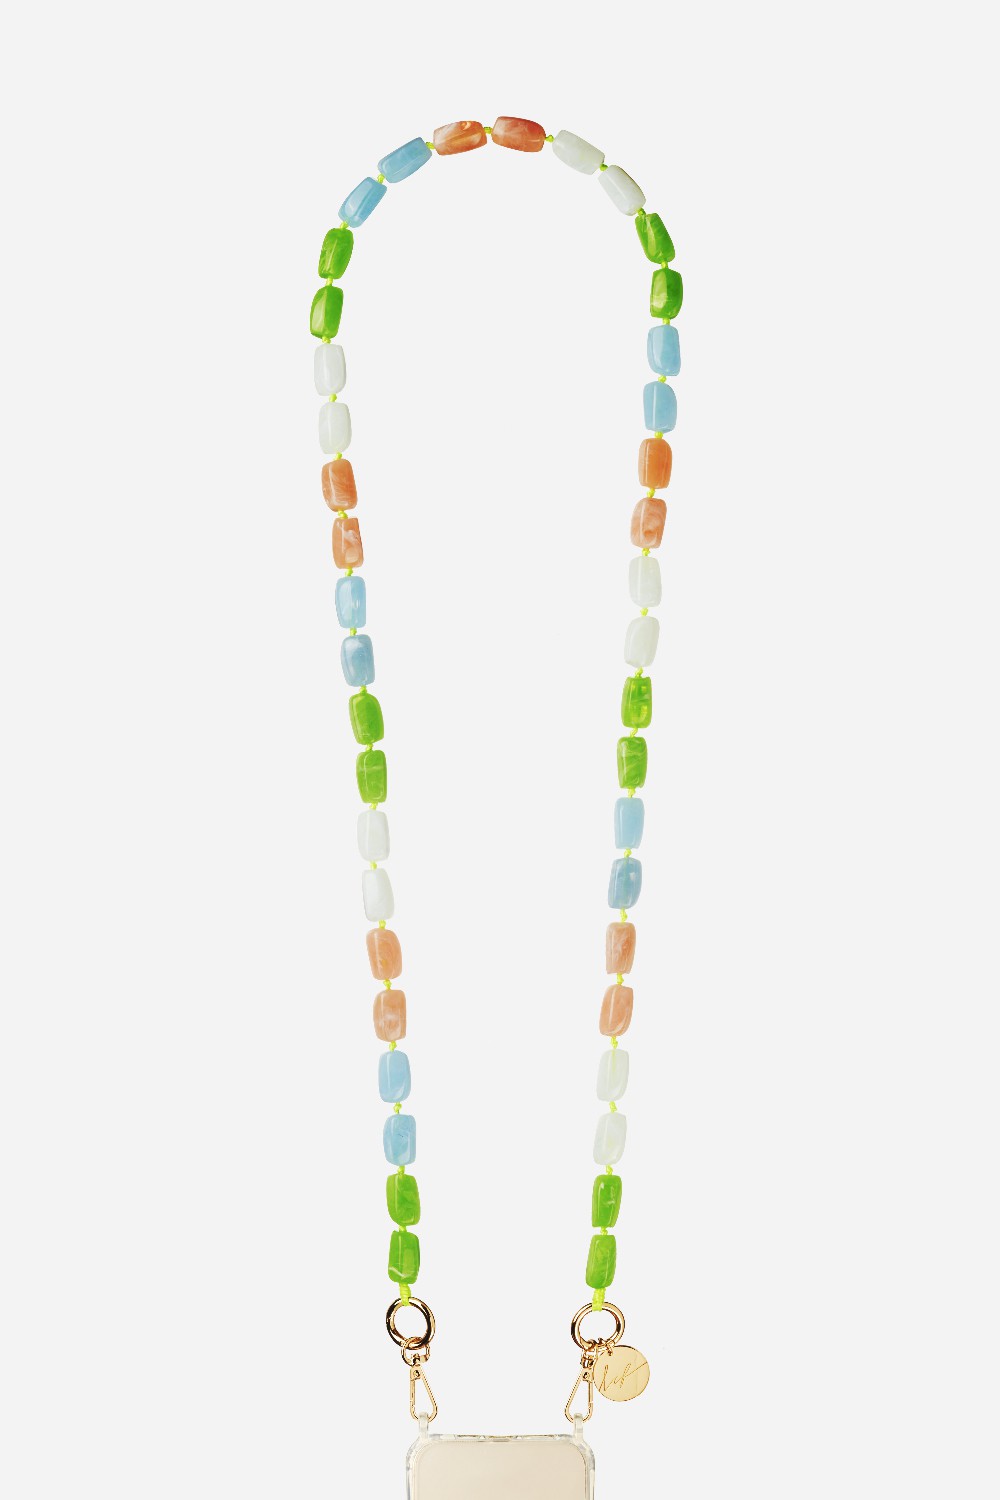 Long Talia Green Chain 120 cm